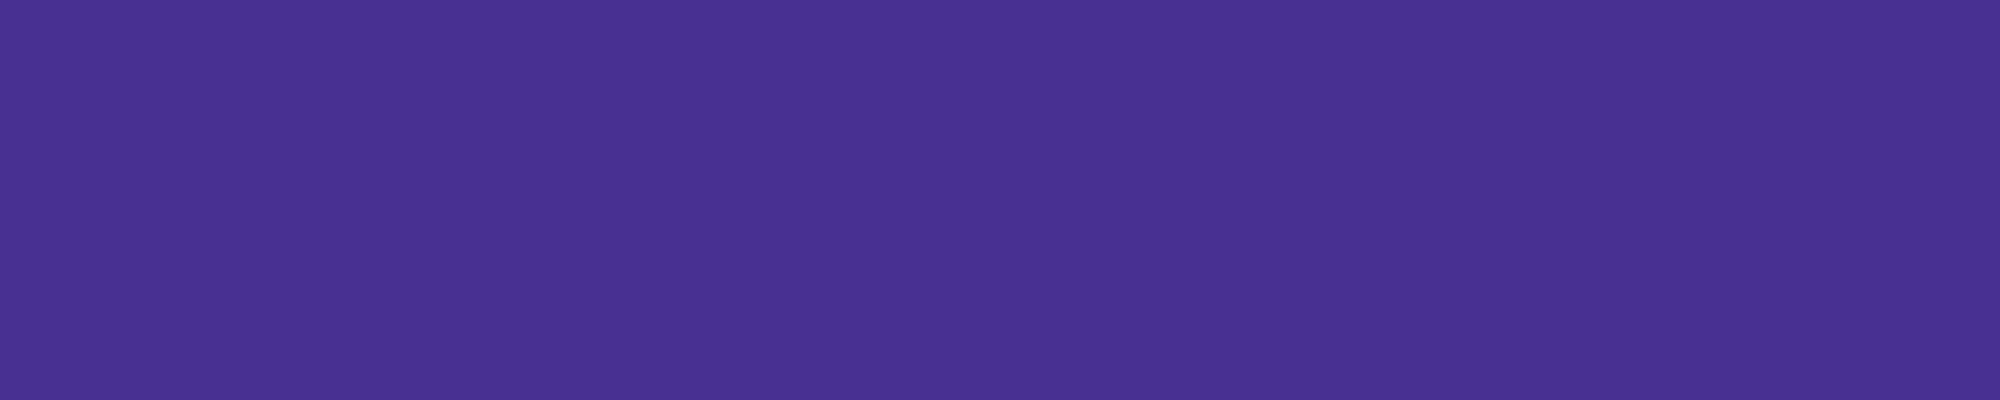 purple large